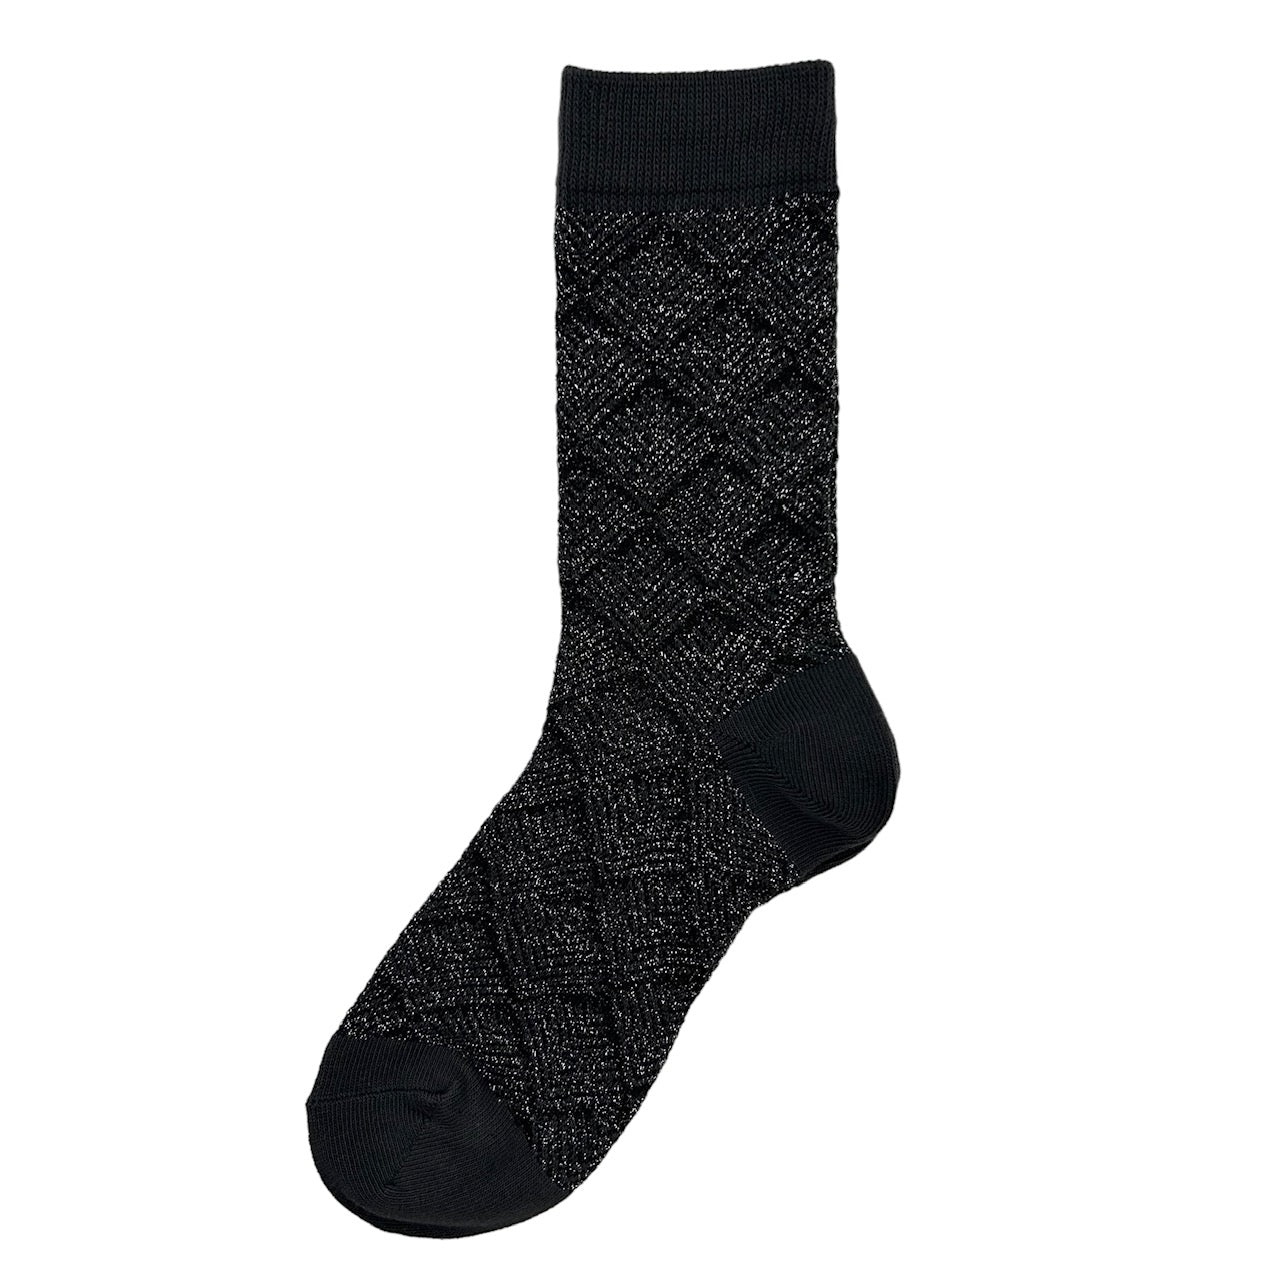 Paris socks